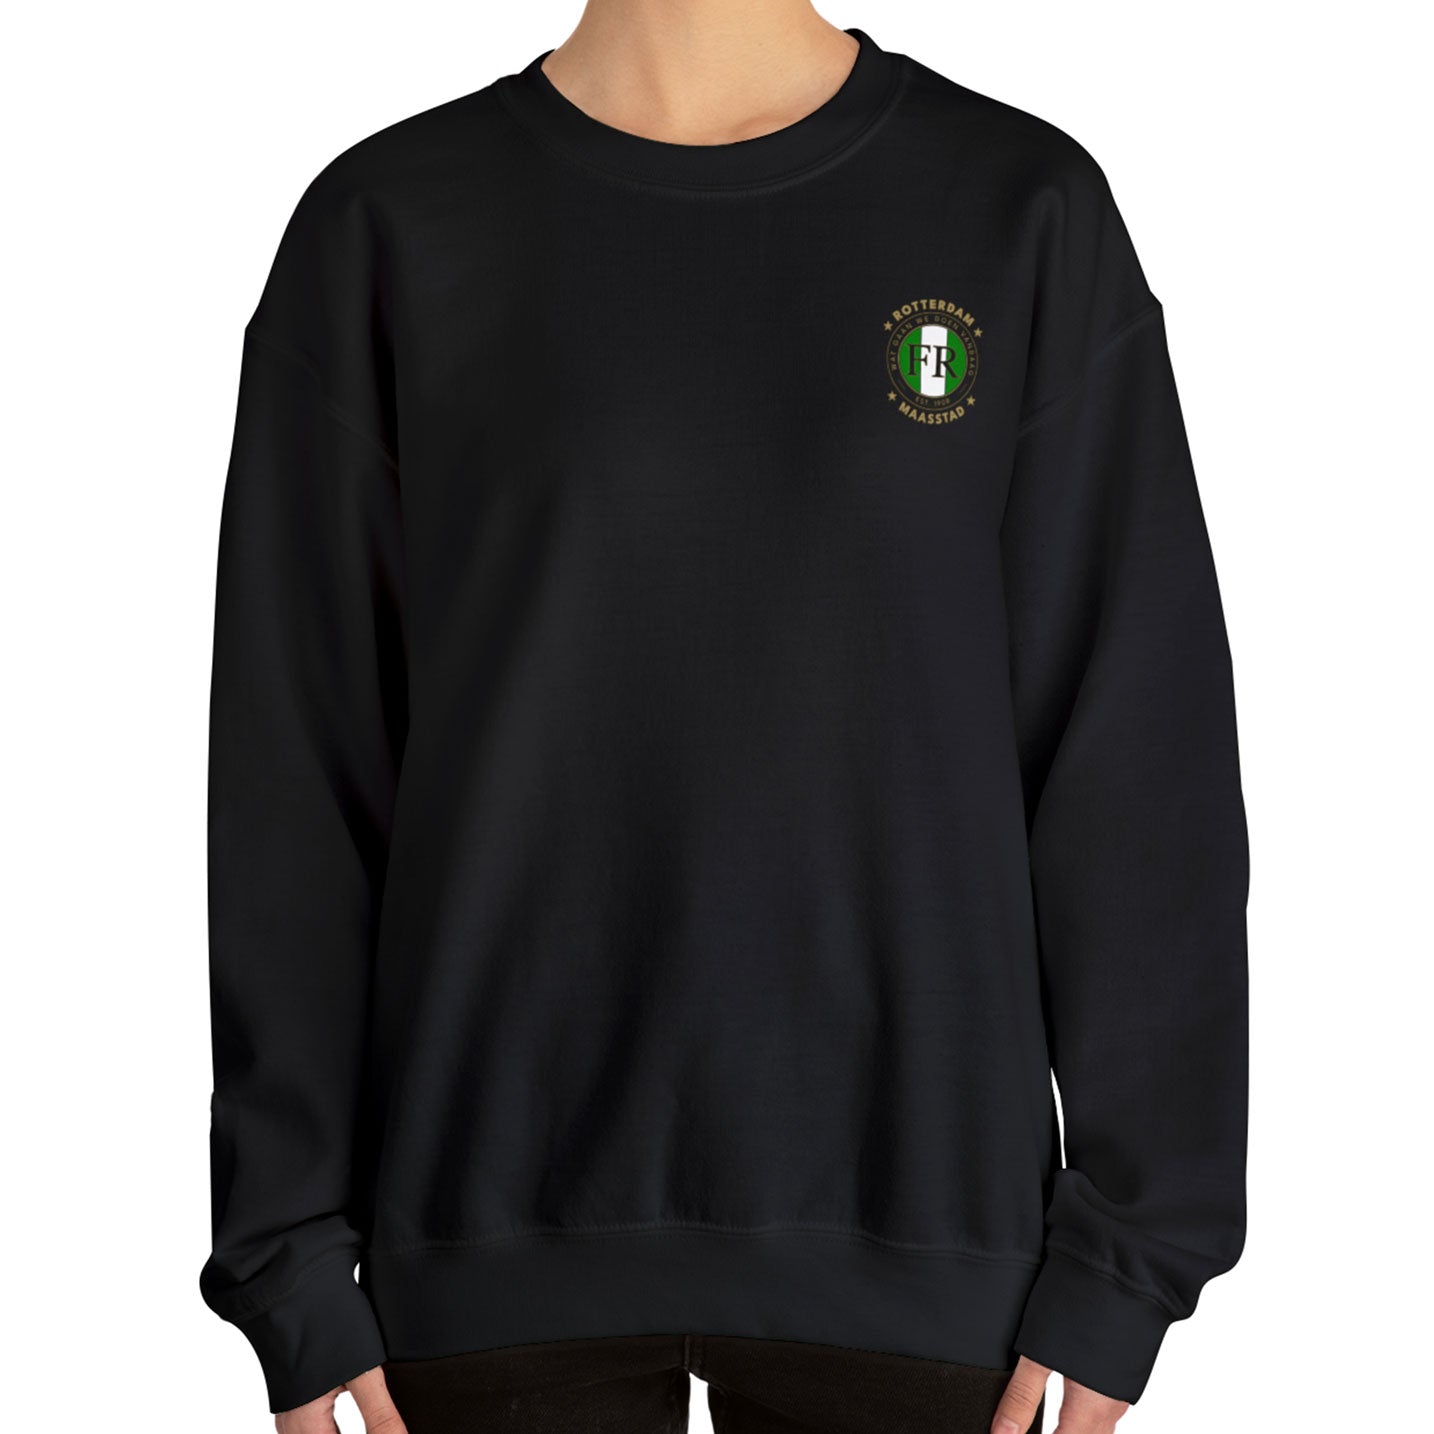 Zwarte Feyenoord sweater